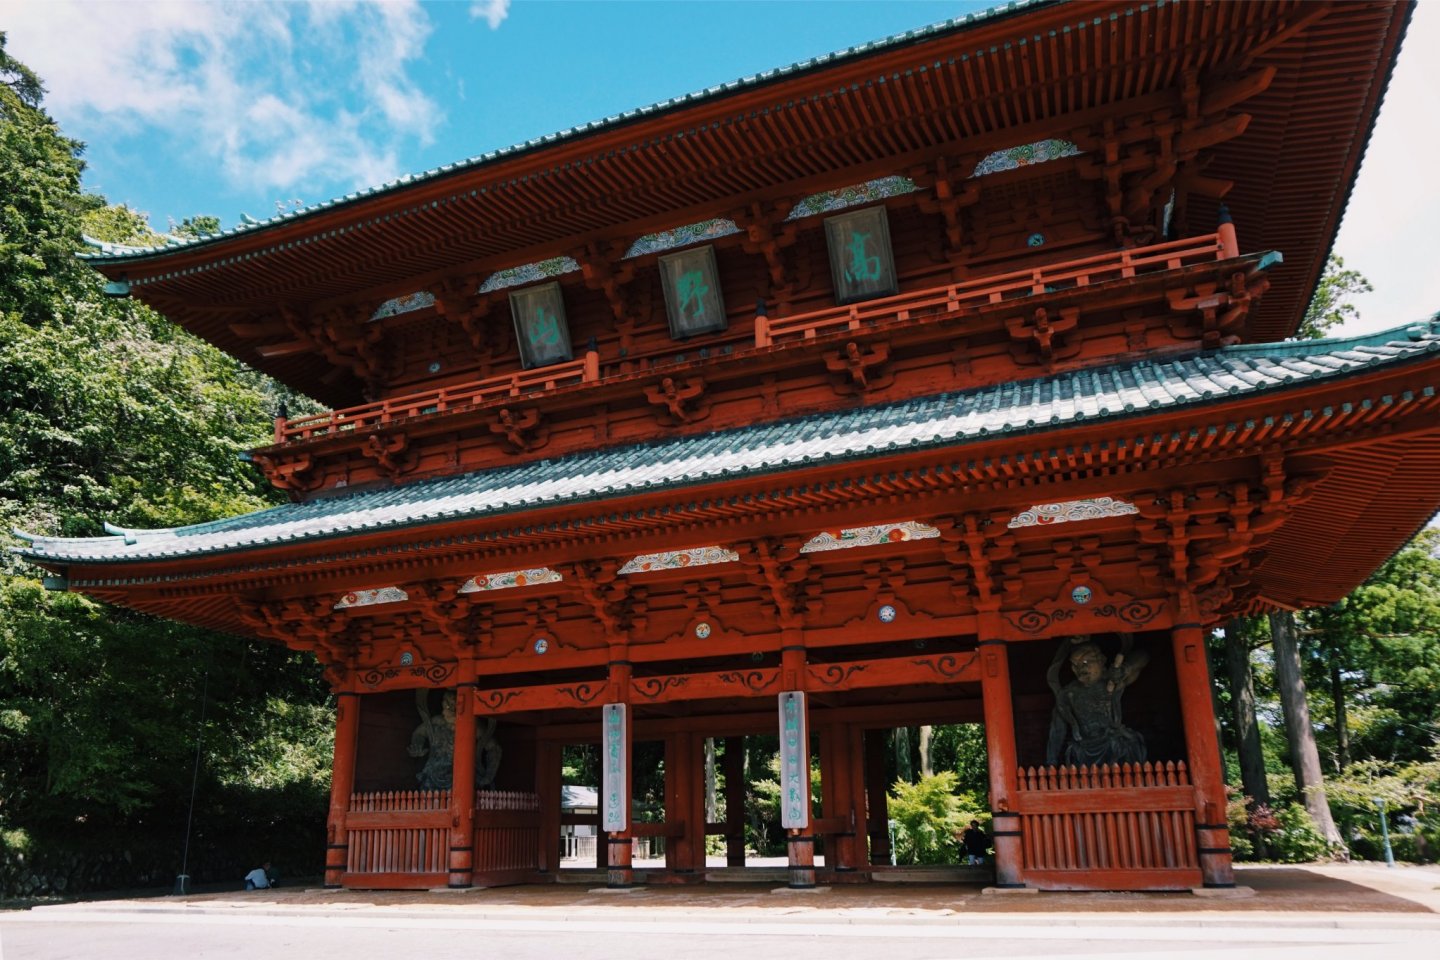 The impressive Daimon Gate